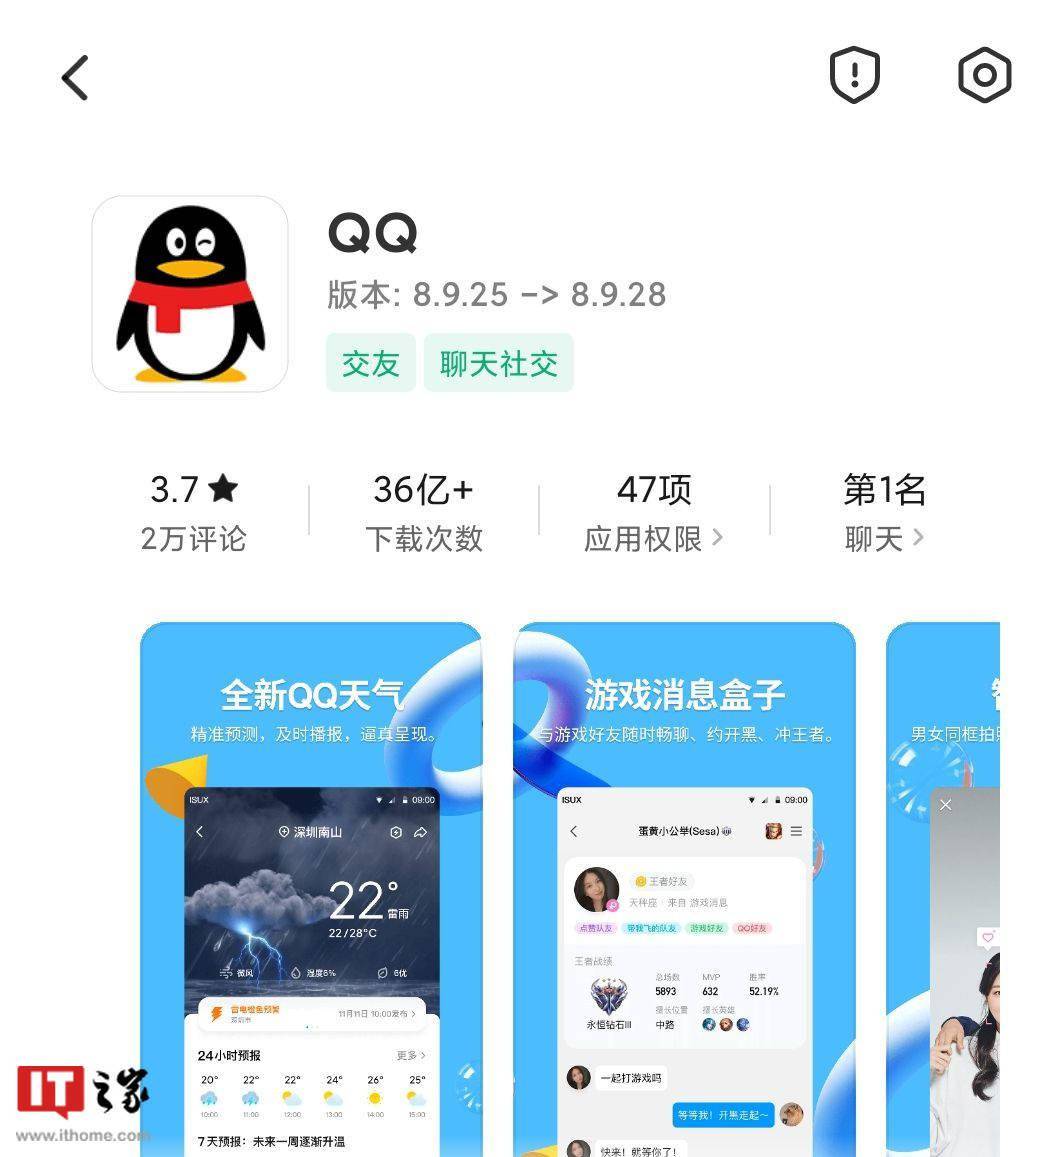 腾讯 QQ 安卓版 8.9.28 正式版发布：增加群帖子发言范畴等